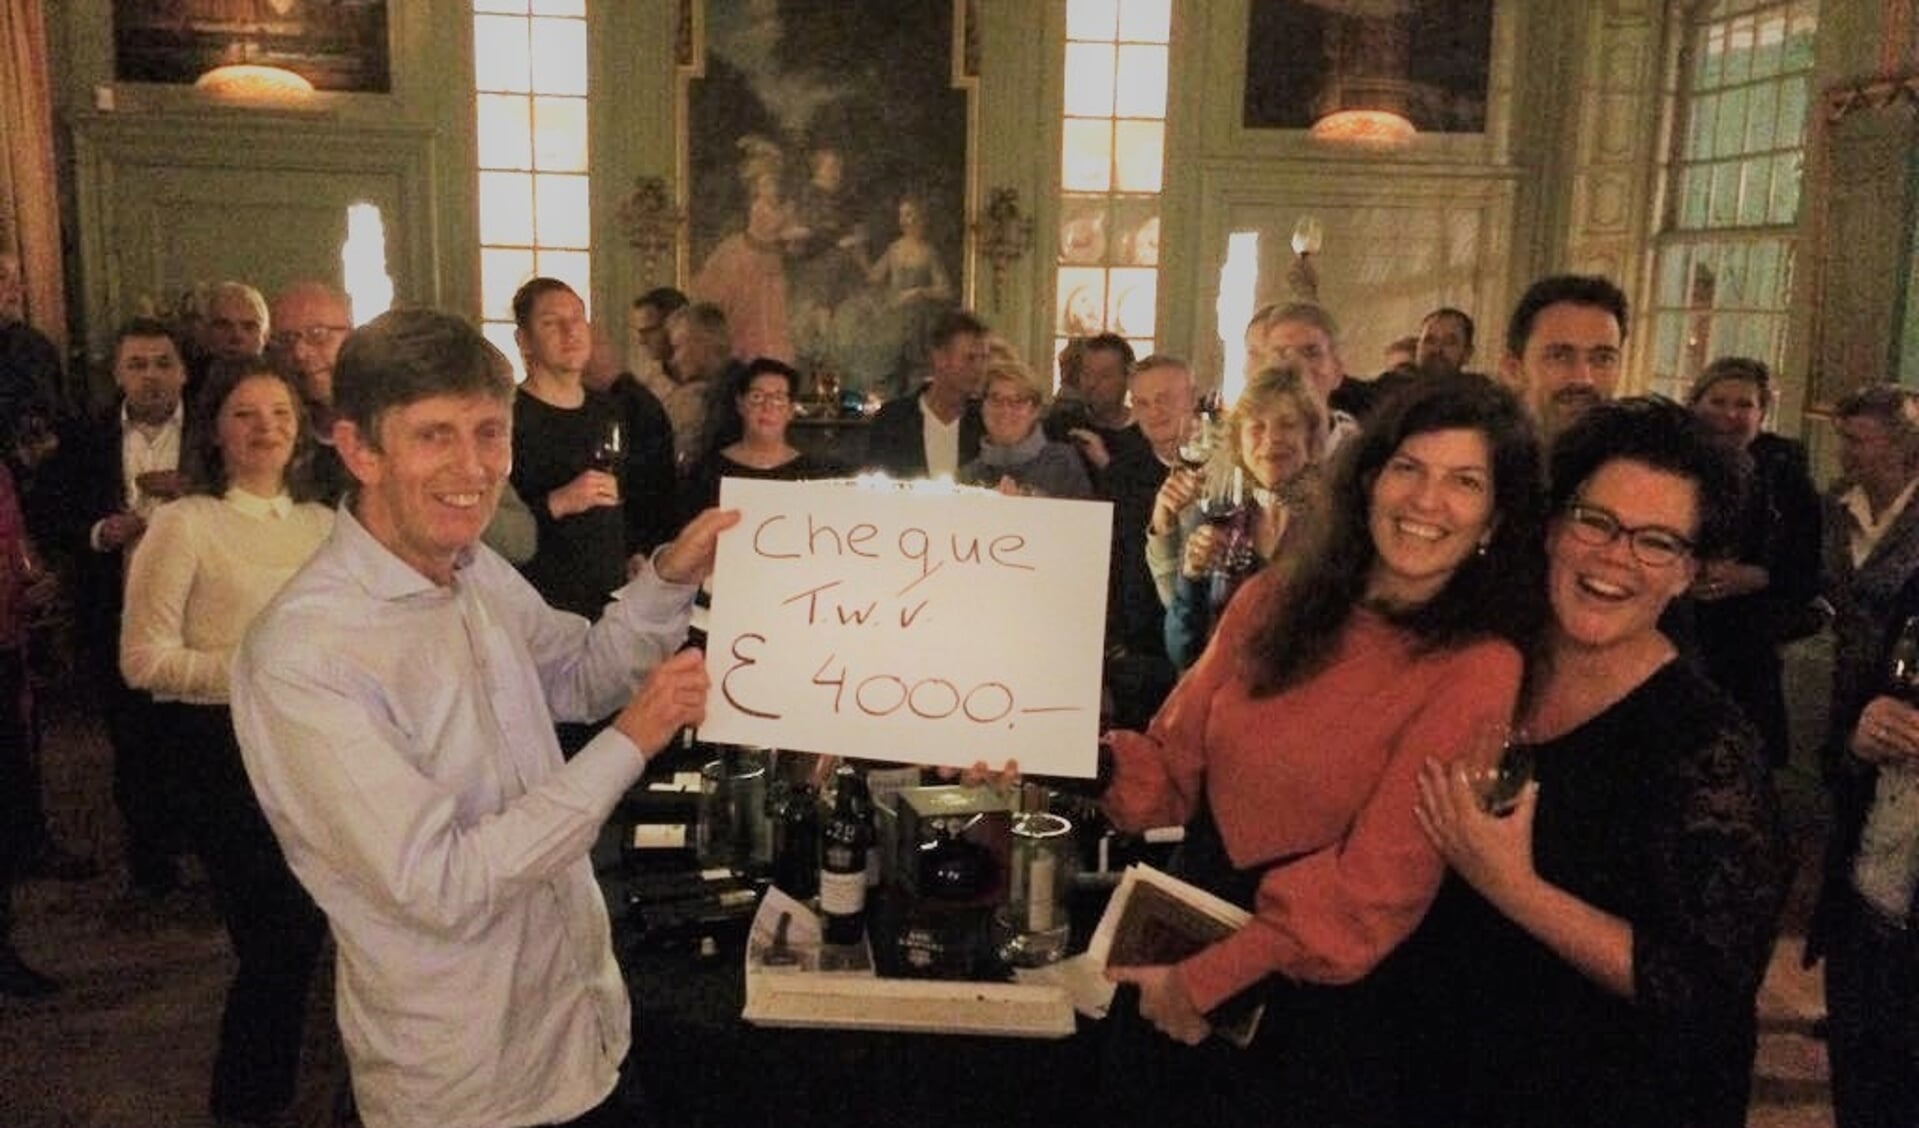 Vorig jaar leverde de wijnavond 4000 euro op